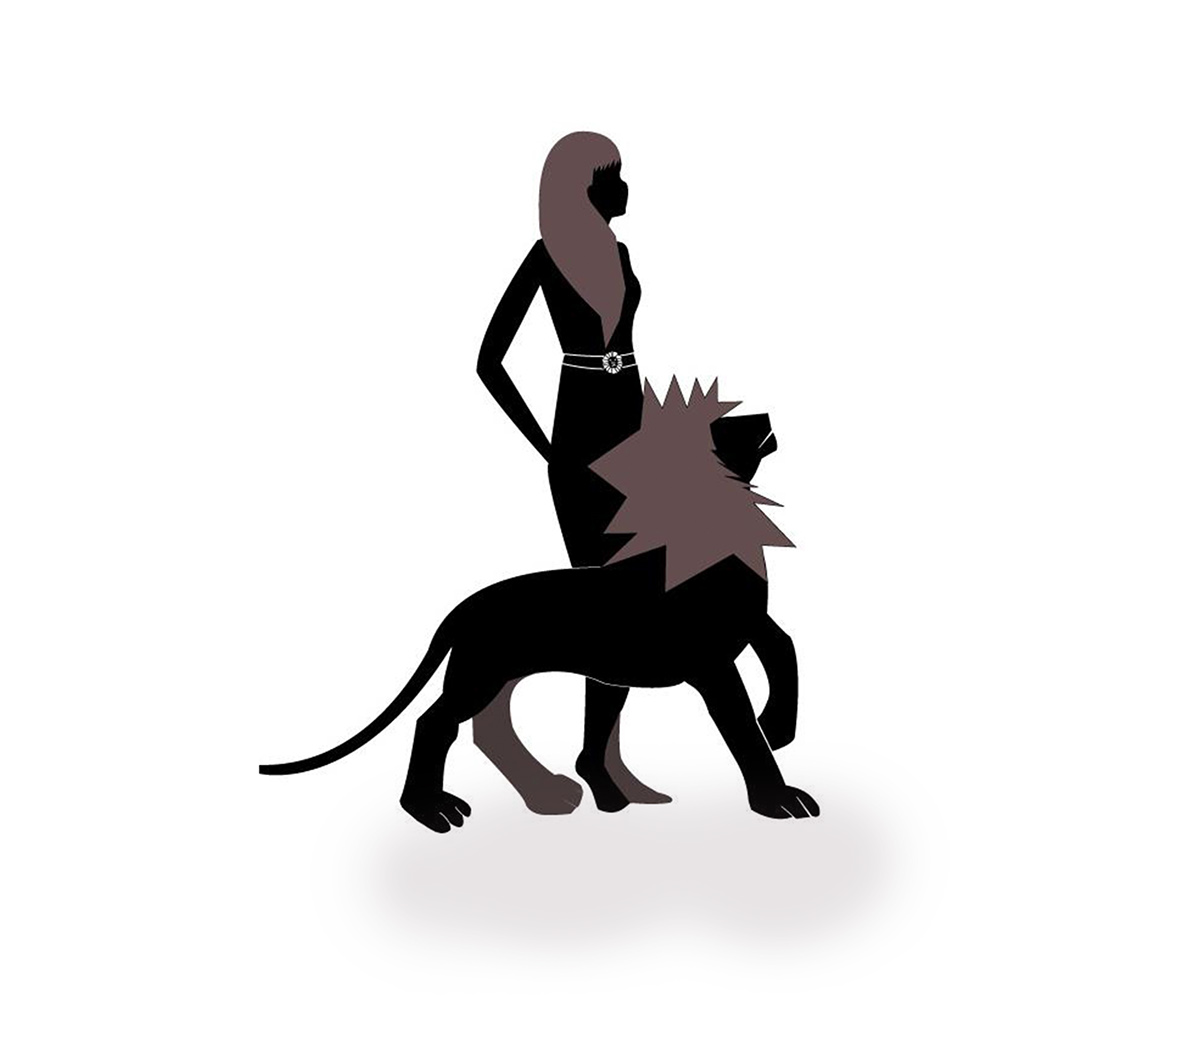 Leo illustrate design logo